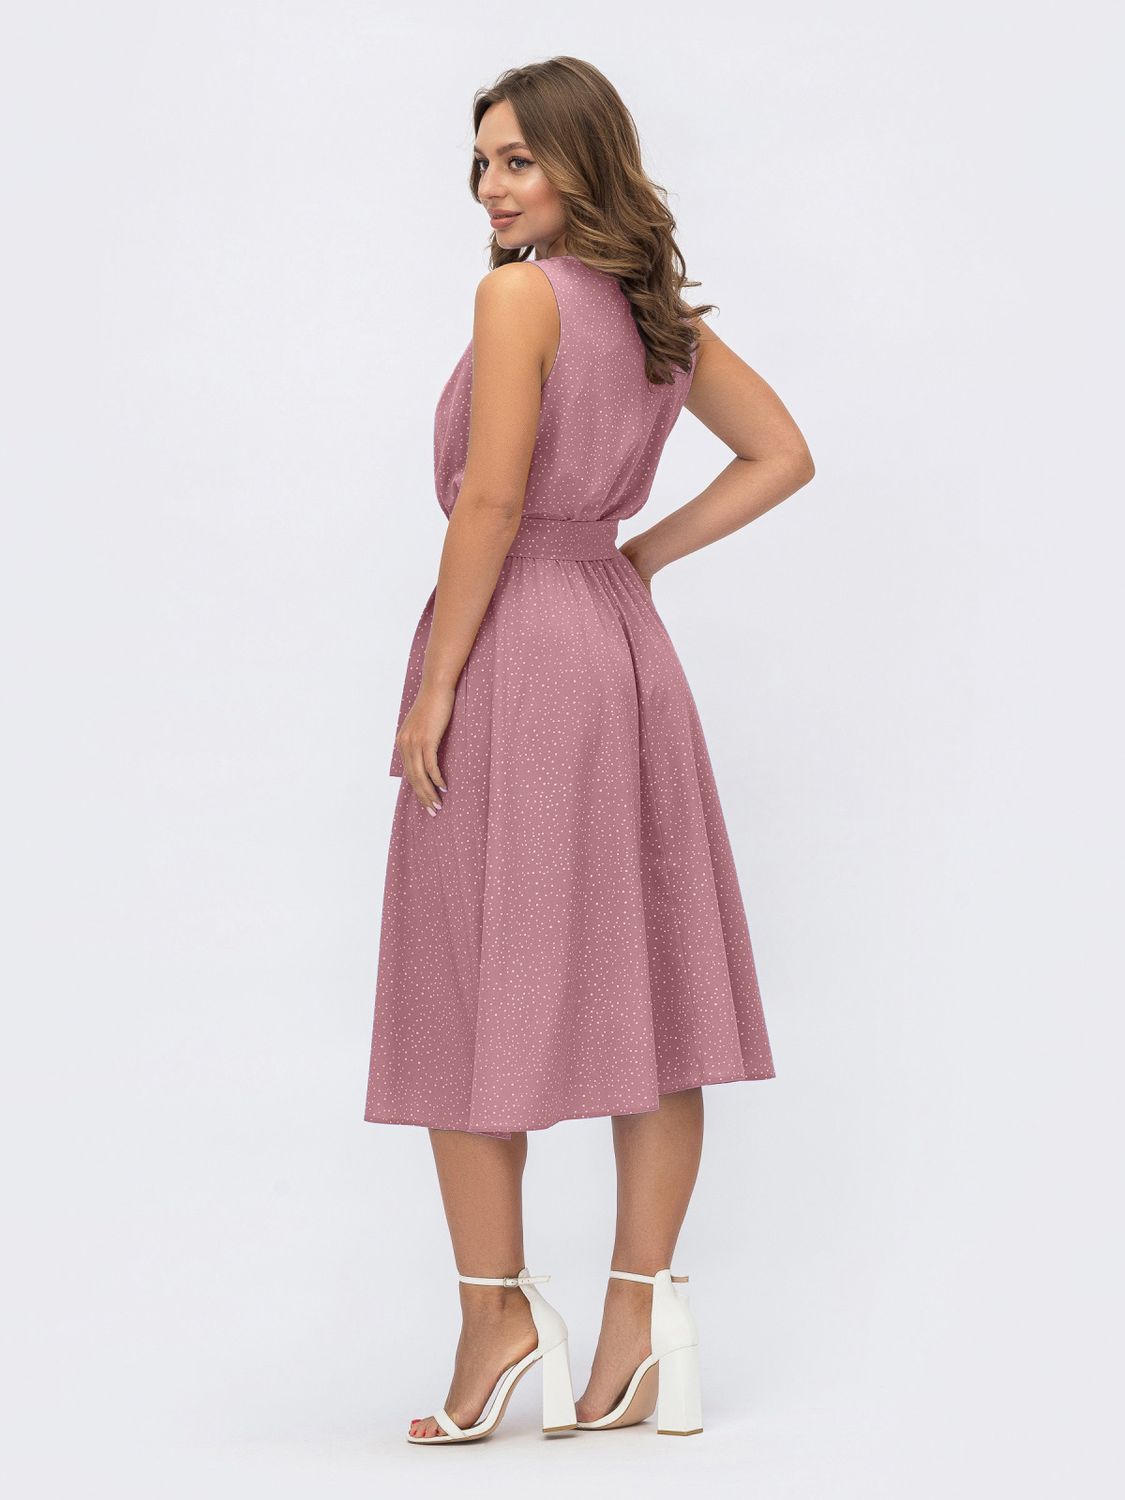 Літнє плаття зі спідницею-сонце рожевого кольору - фото